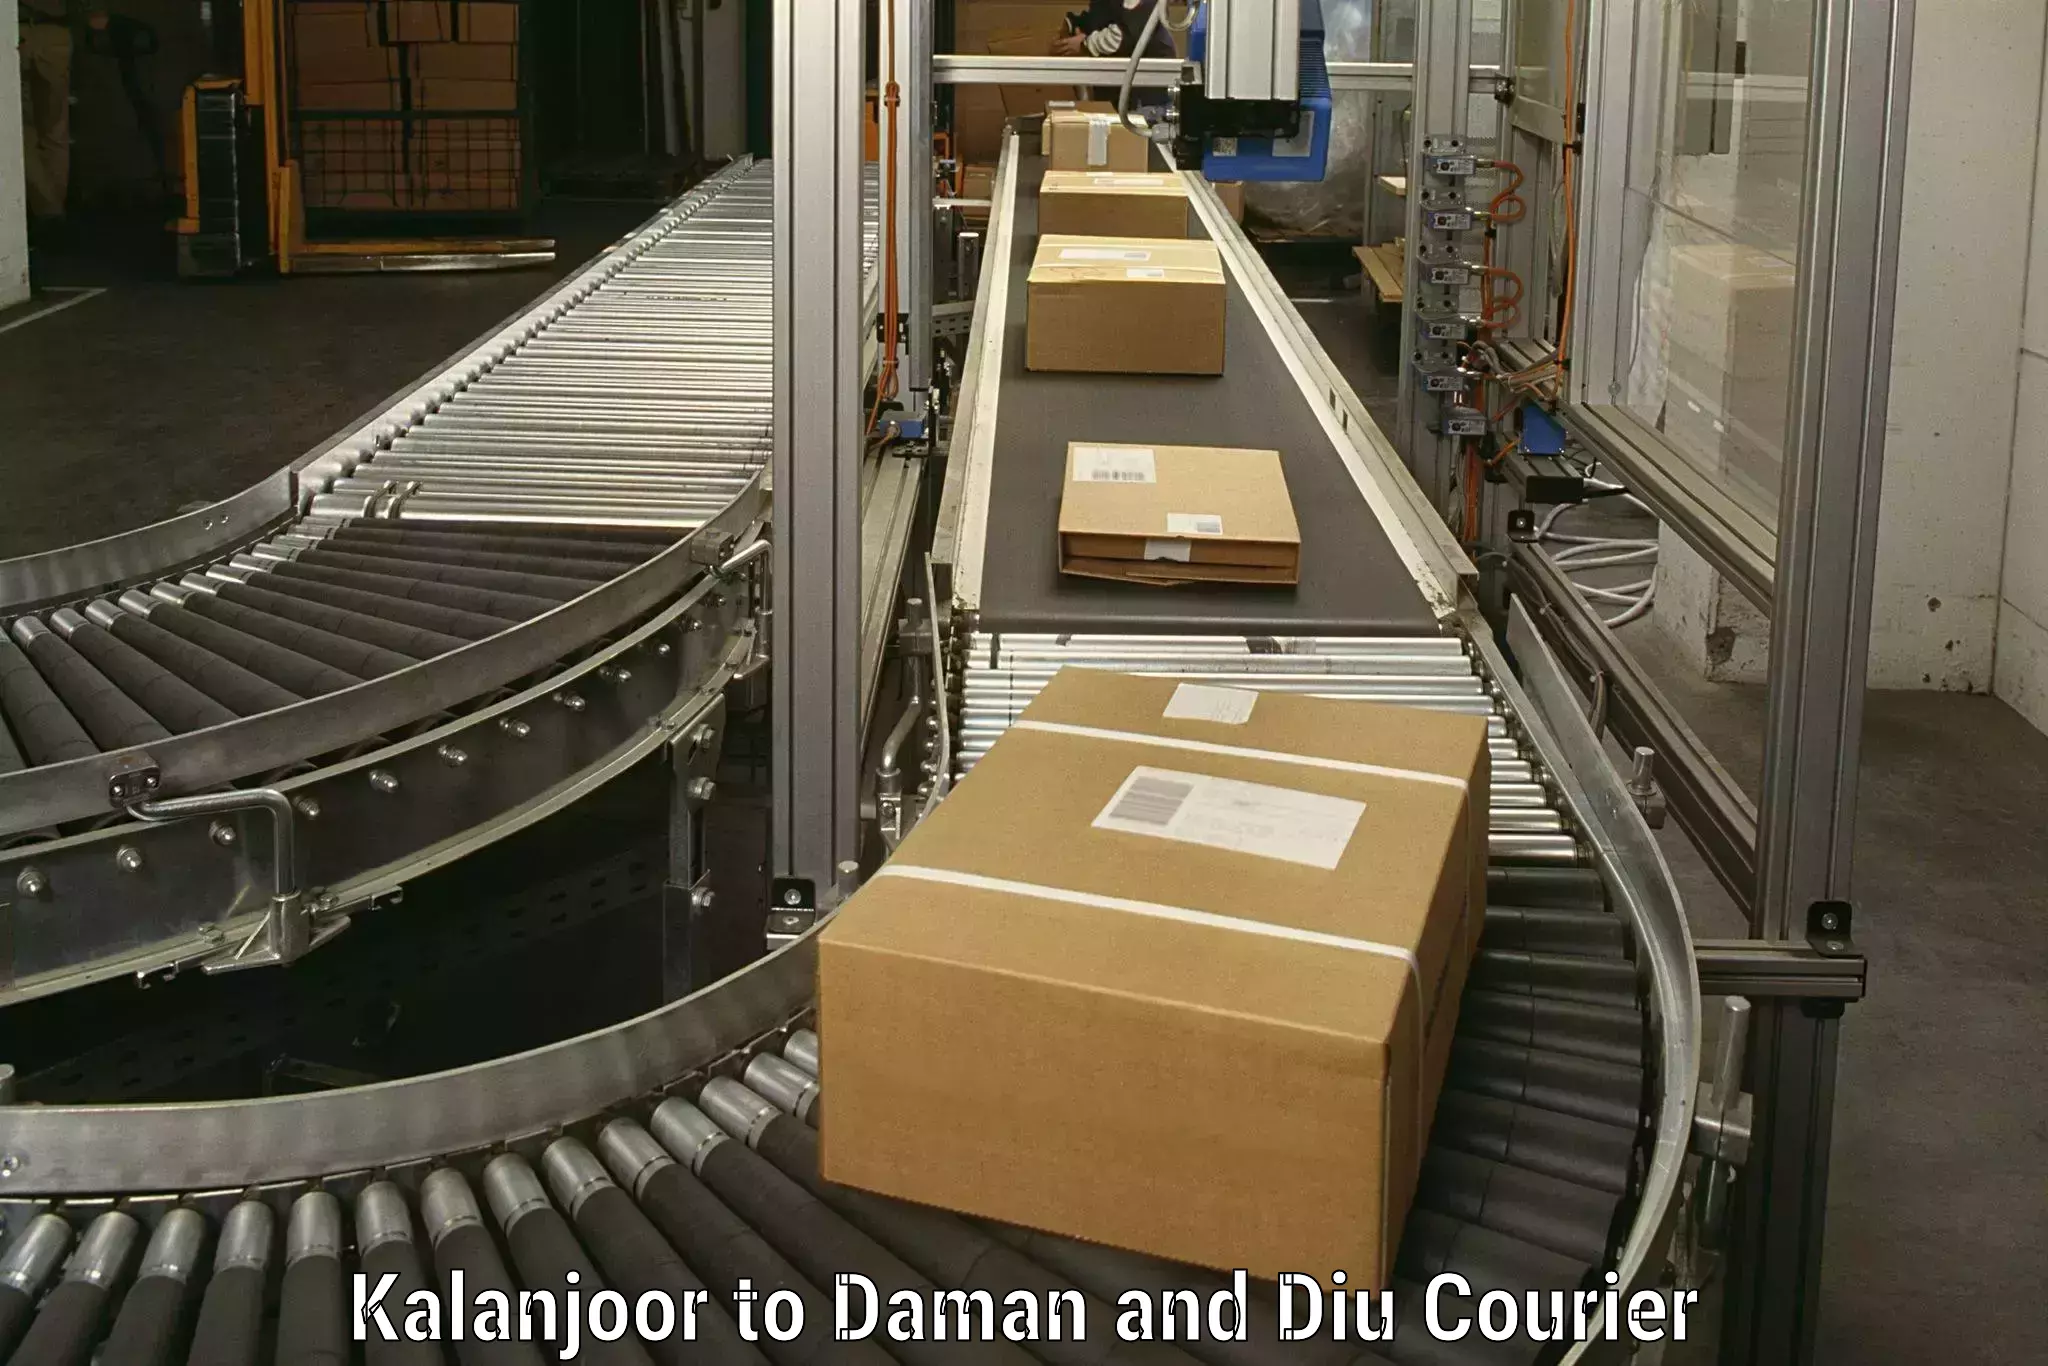 Household goods transport service Kalanjoor to Daman and Diu